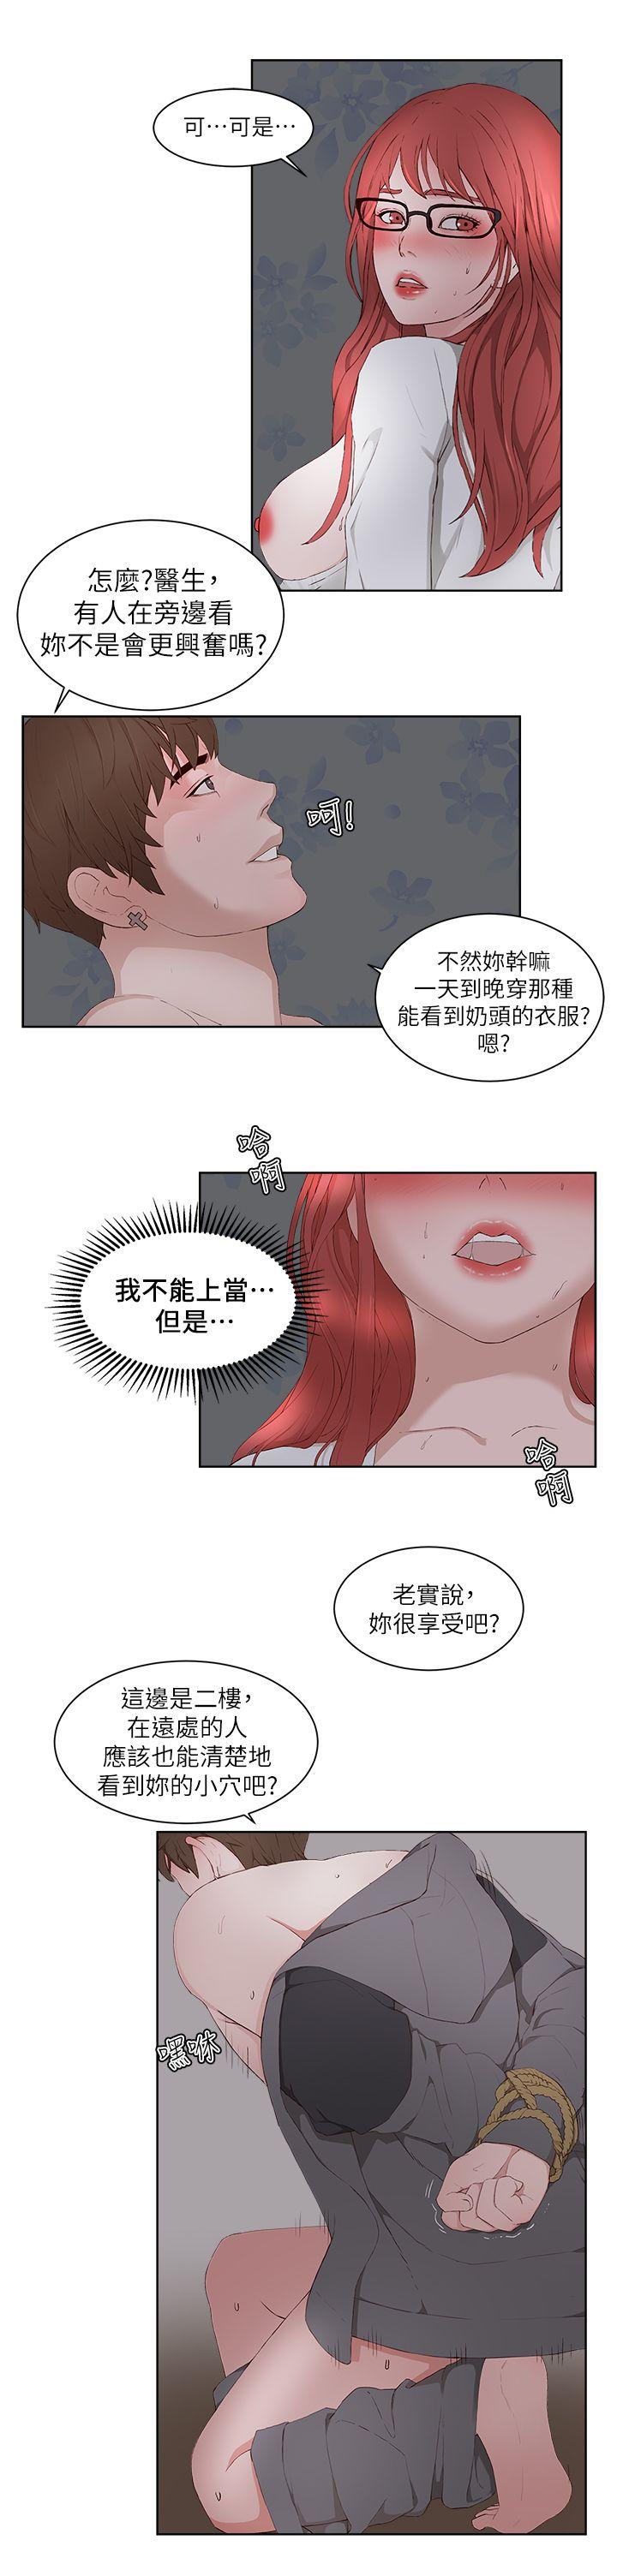 私生:爱到痴狂  最终话 漫画图片16.jpg